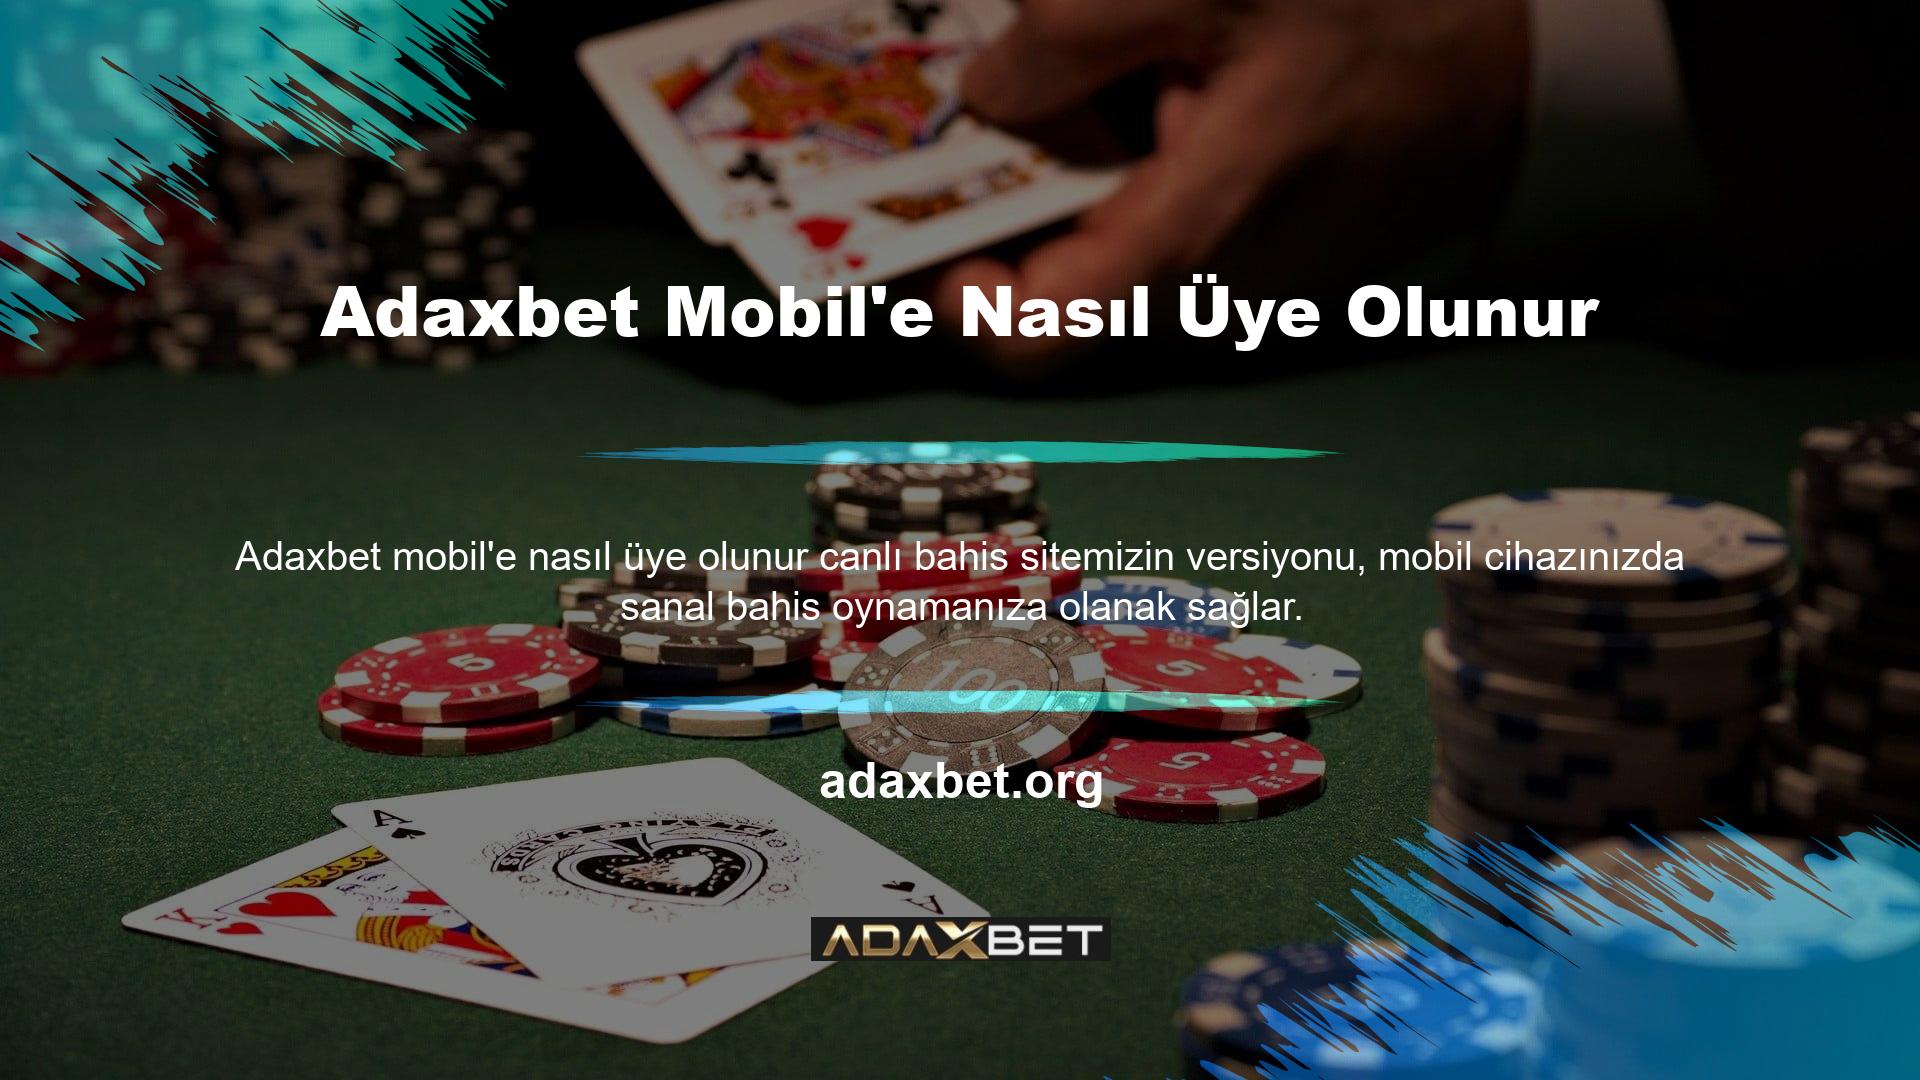 Adaxbet Mobile giriş yapmak için tarayıcınıza mevcut web sitesi adresini girin